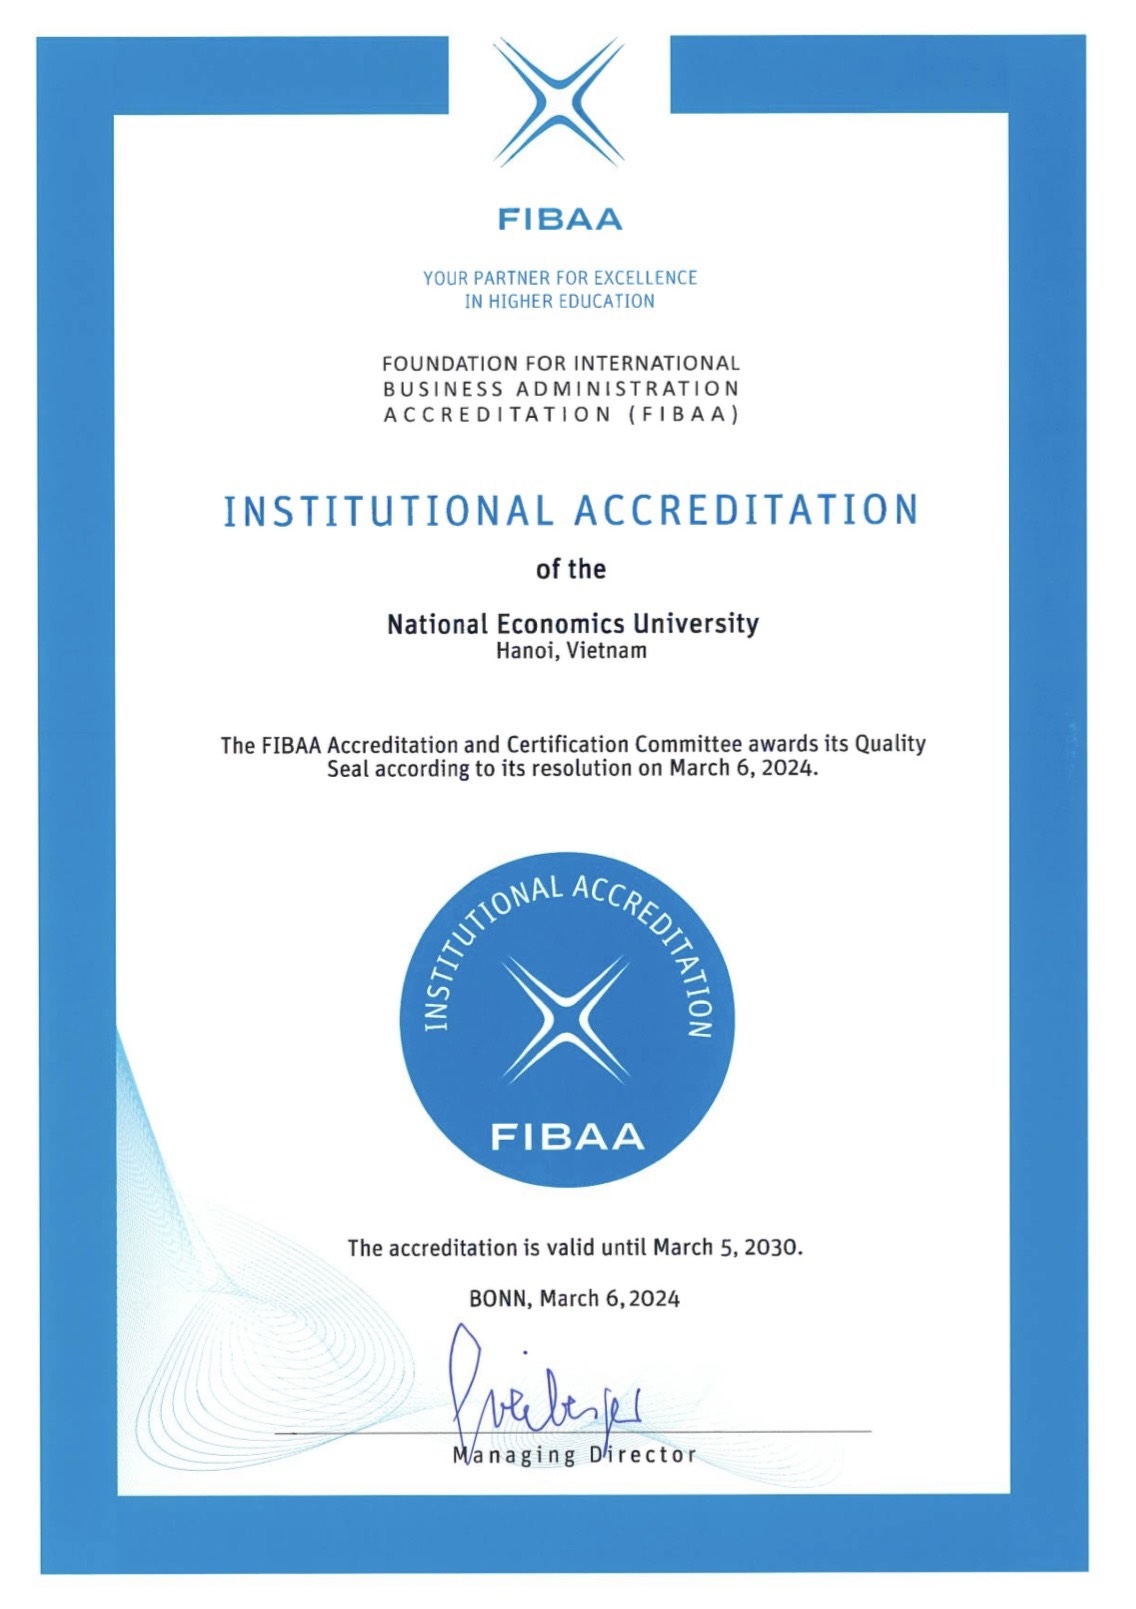 Thêm 1 trường đại học ở Việt Nam được FIBAA công nhận đạt chuẩn